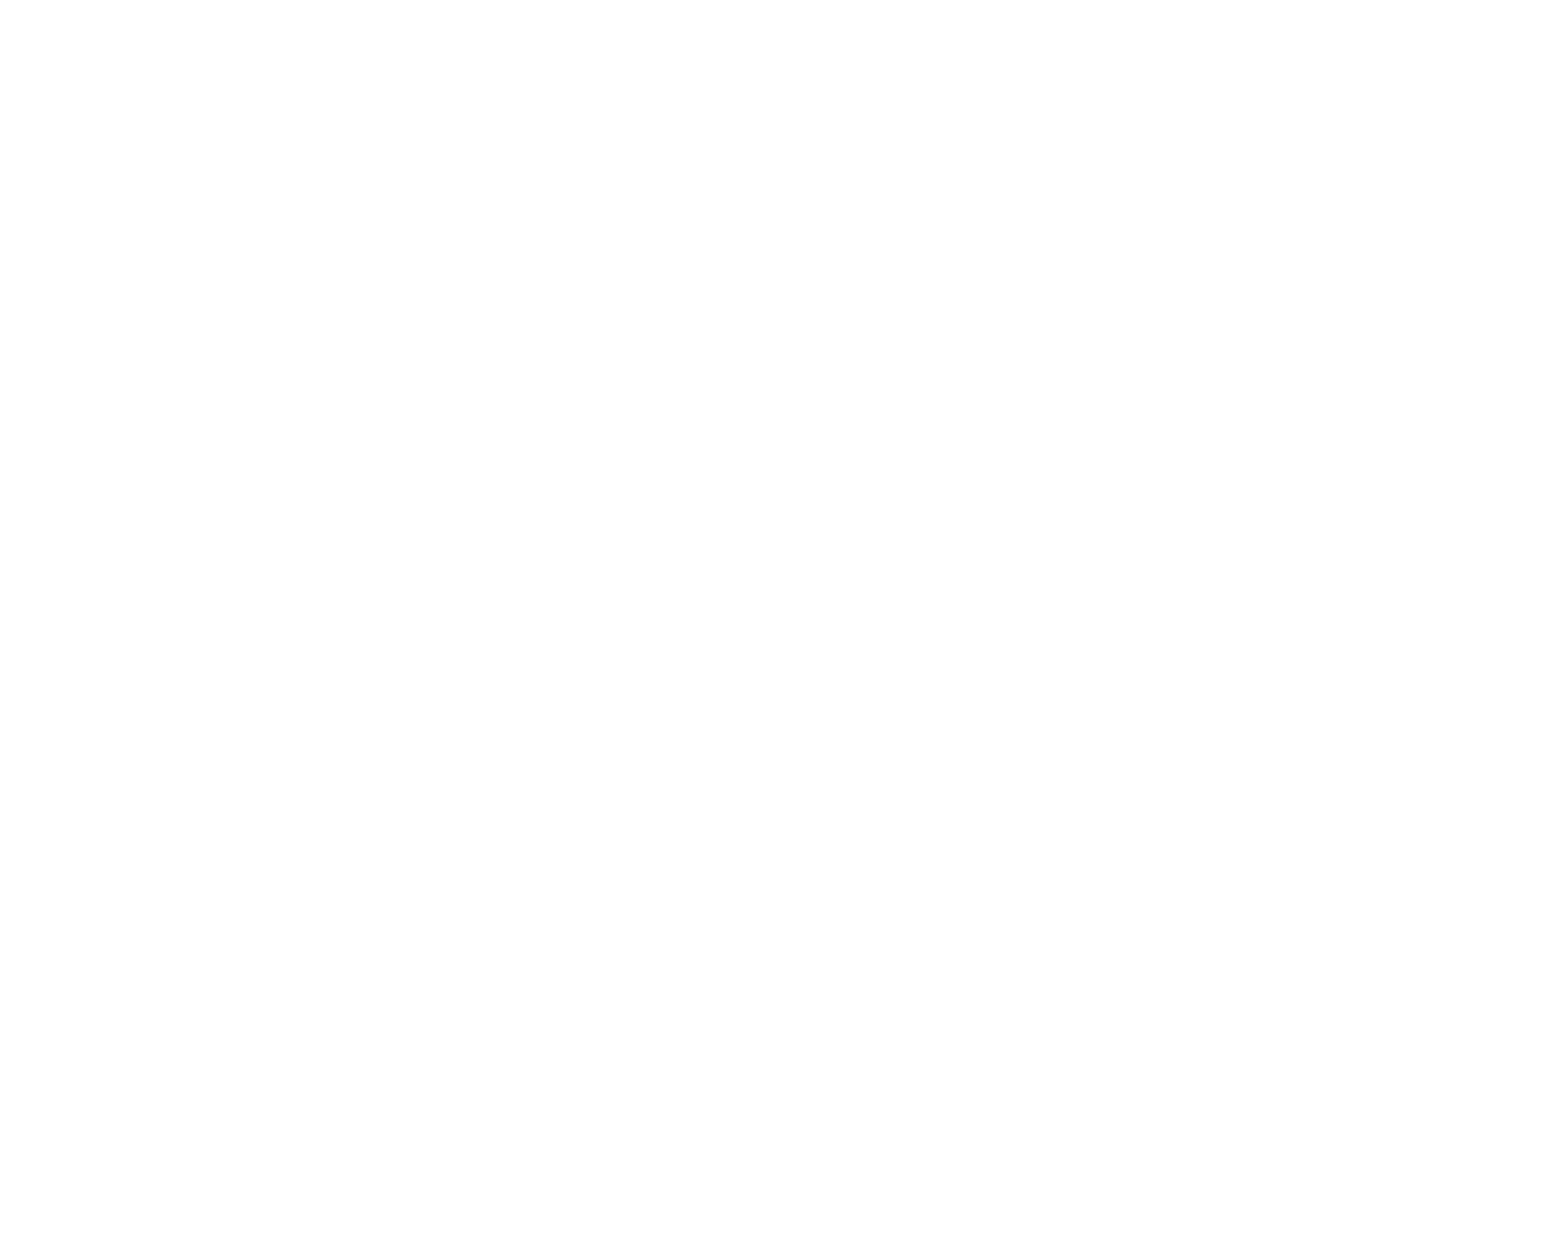 Moelis & Company logo pour fonds sombres (PNG transparent)